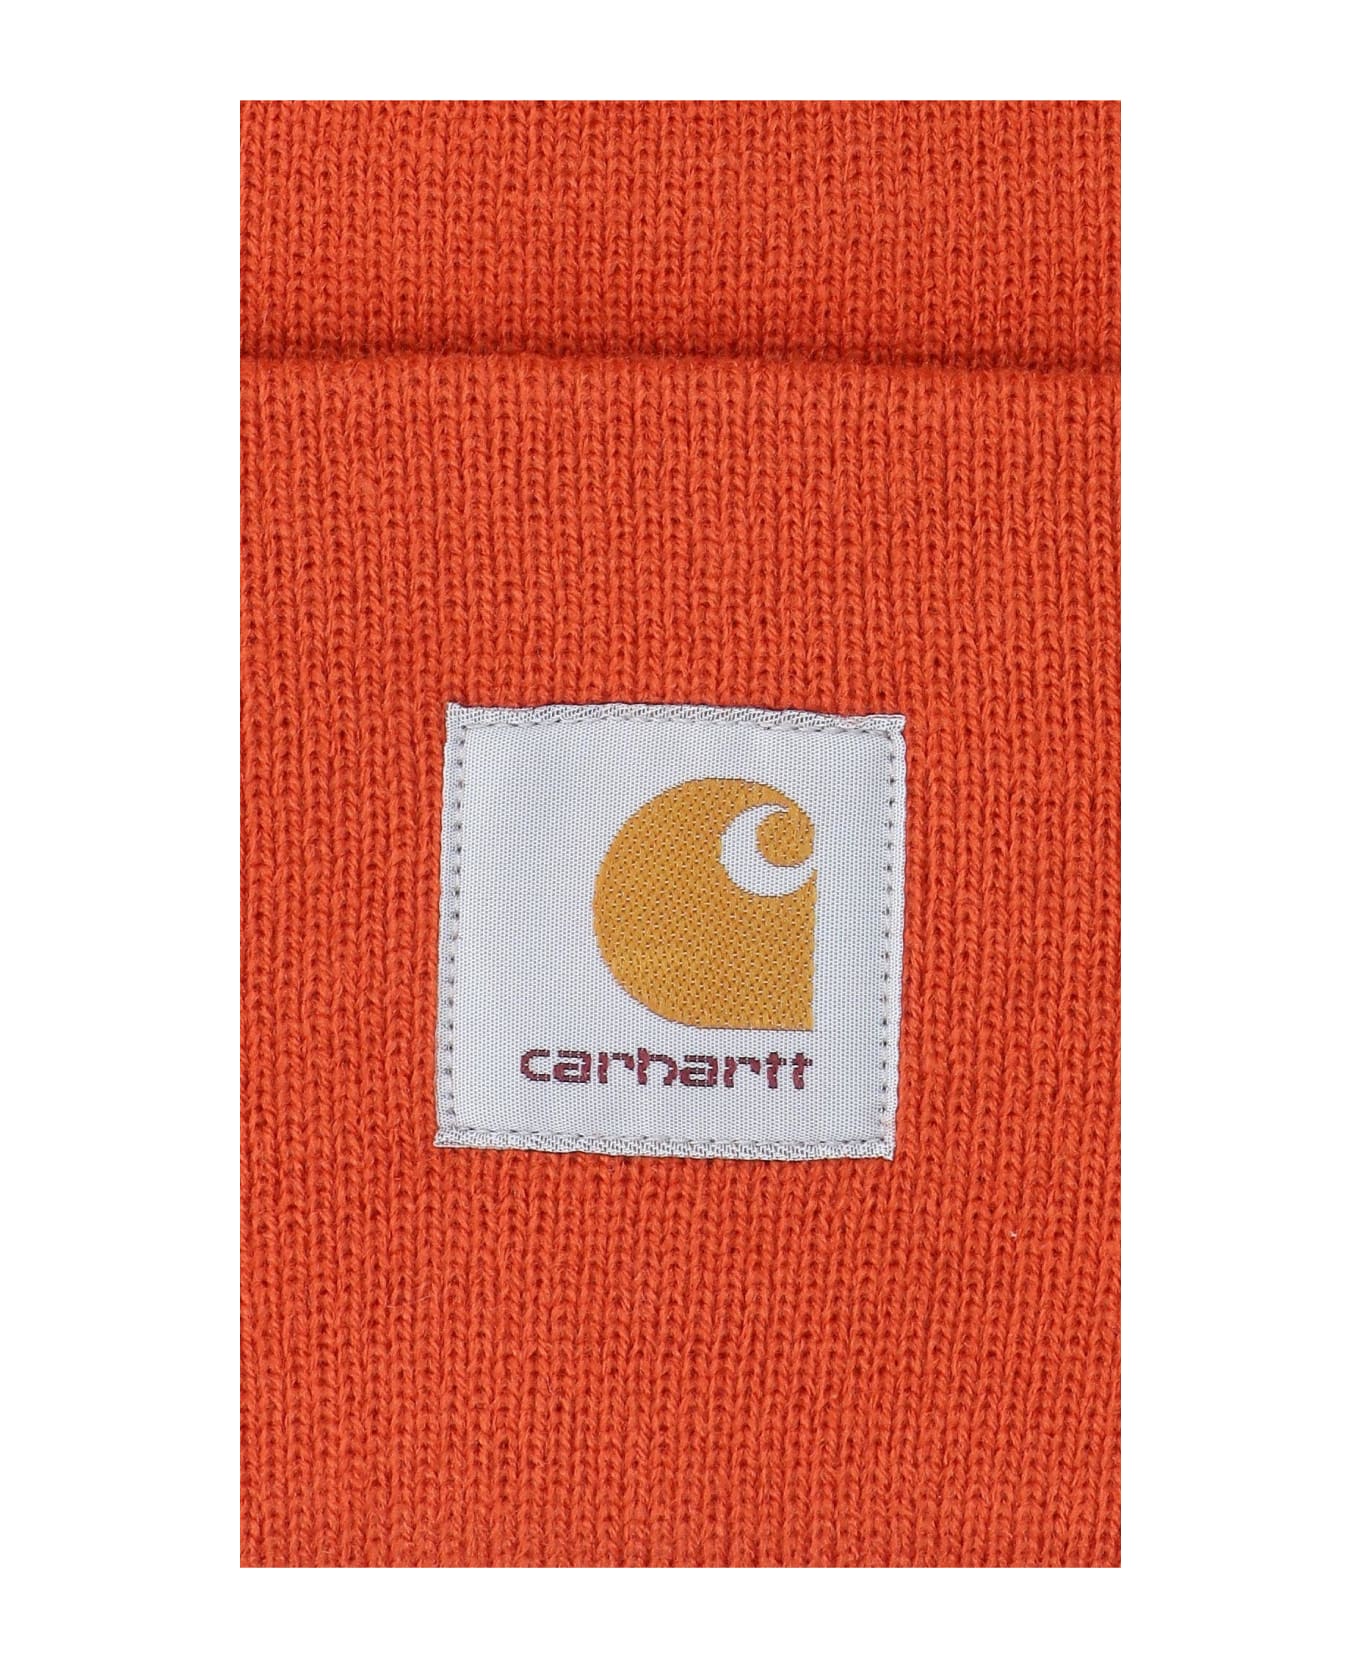 Carhartt Logo Cap - Brick